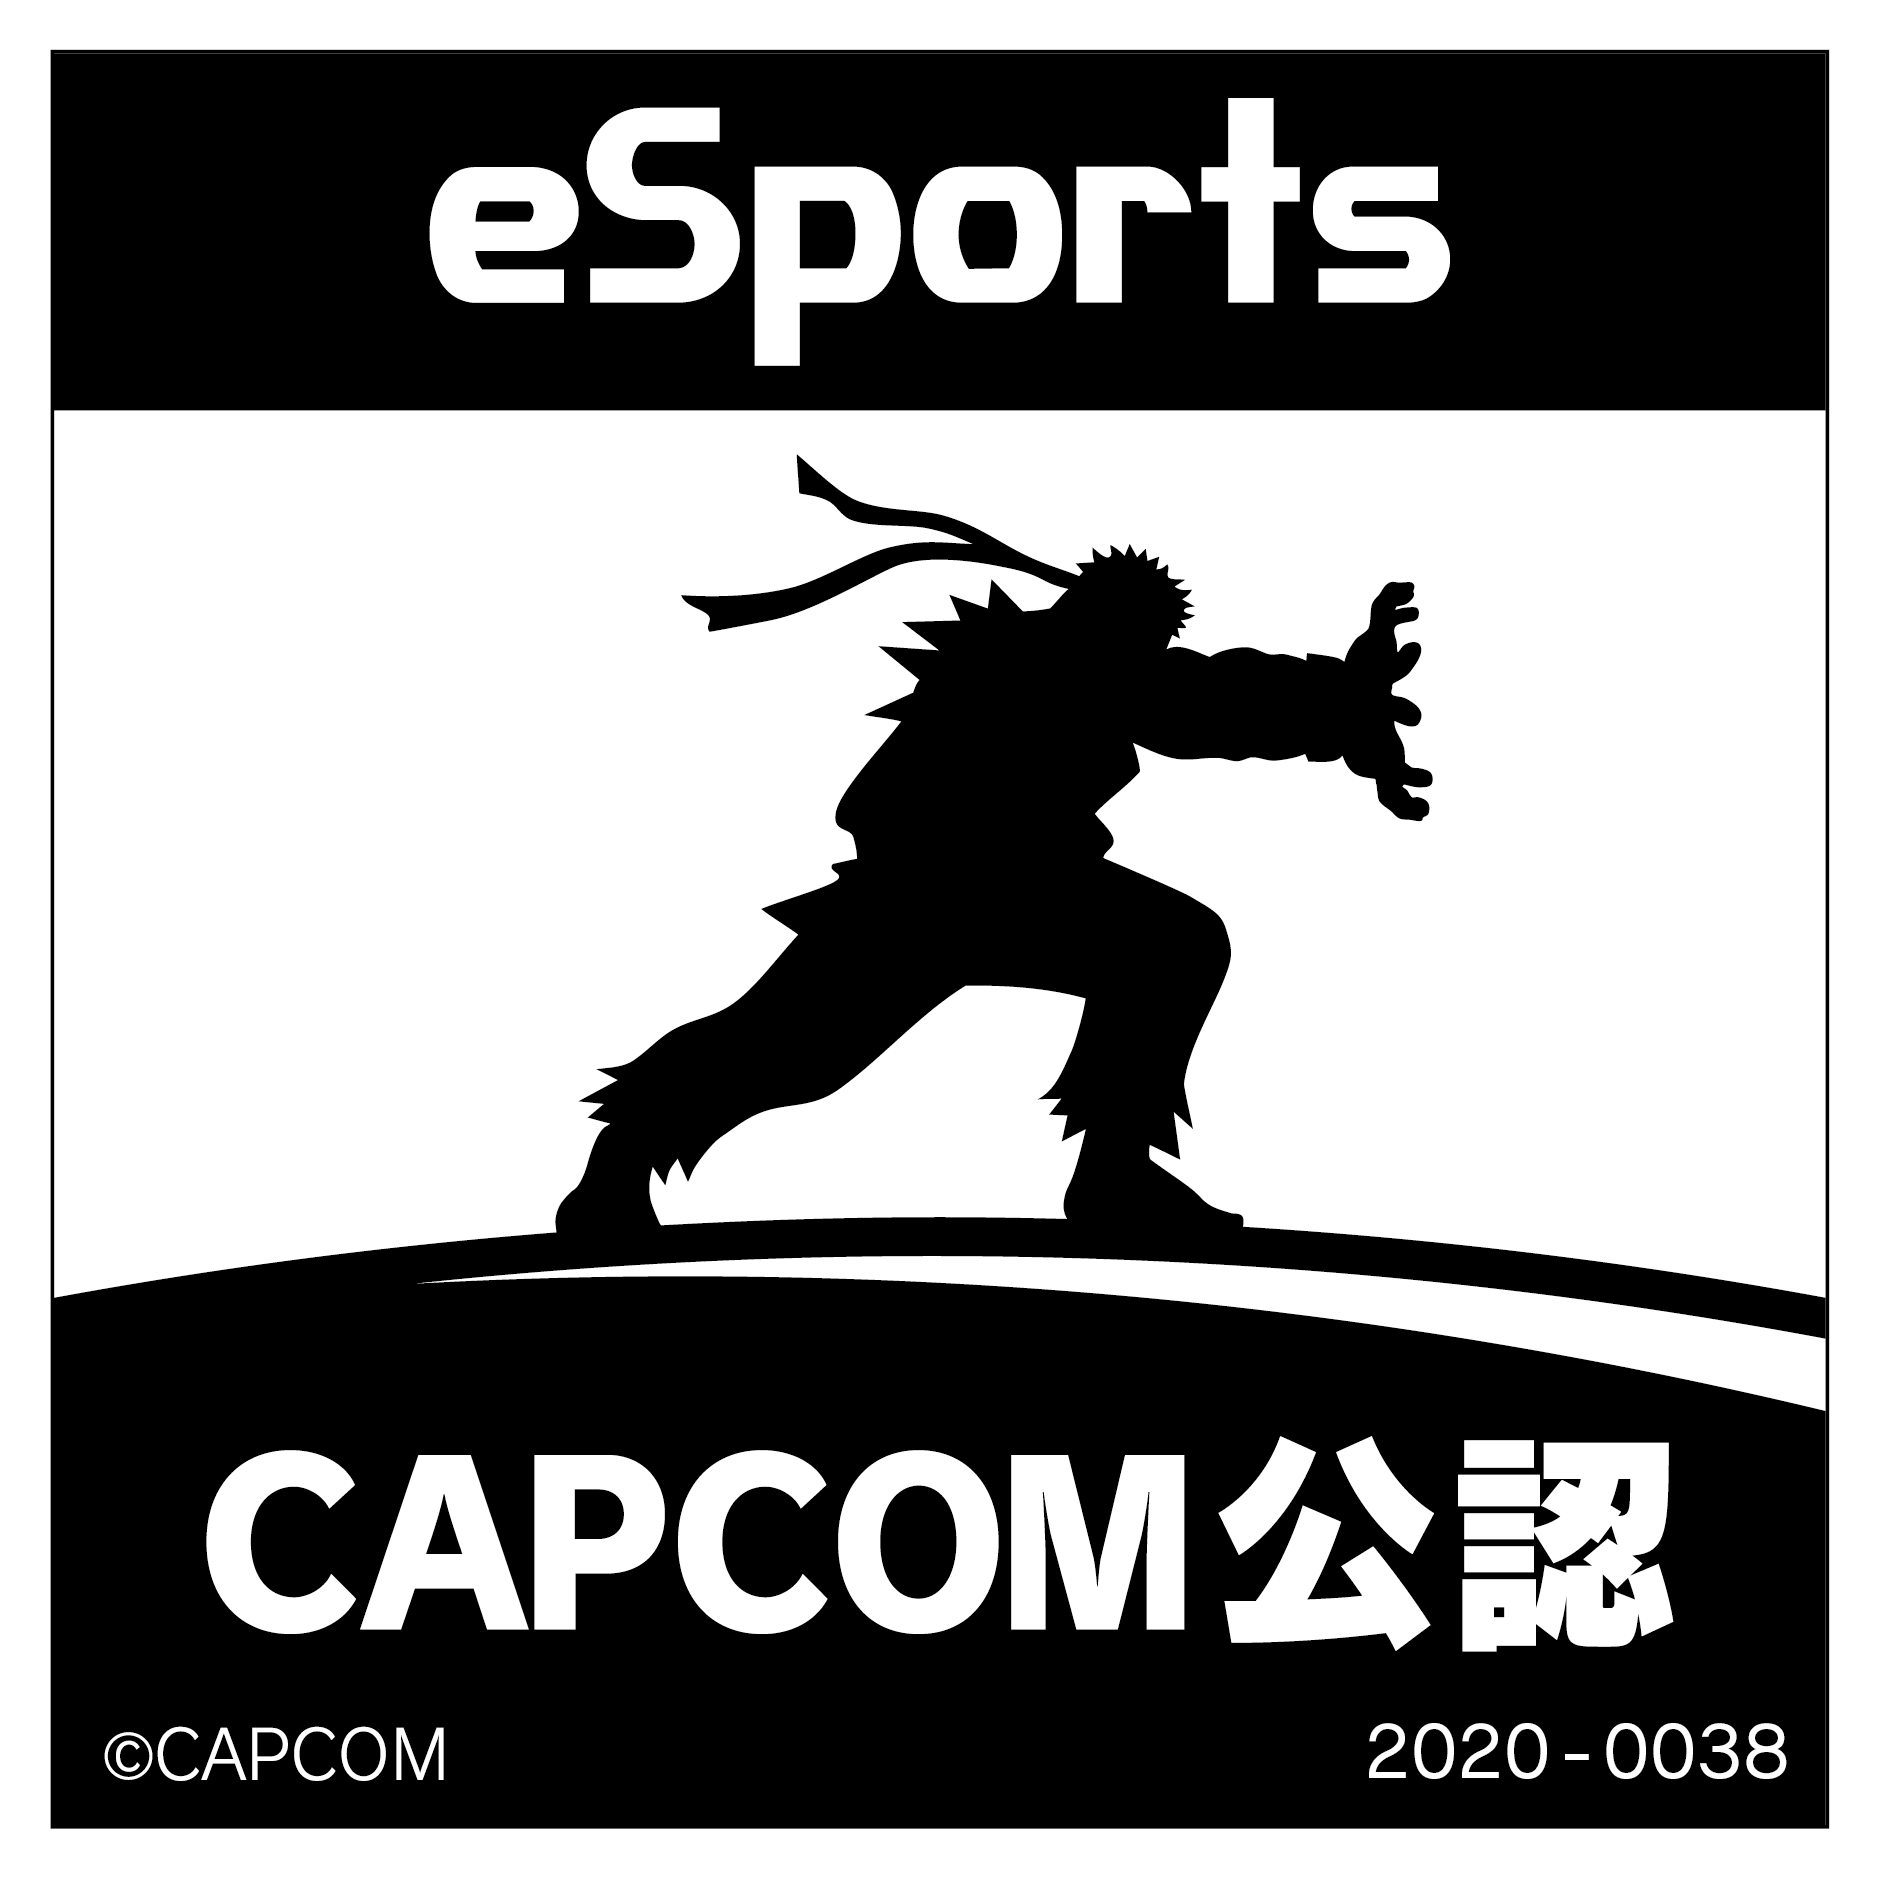 eSports CAPCOM公認 2020-0038